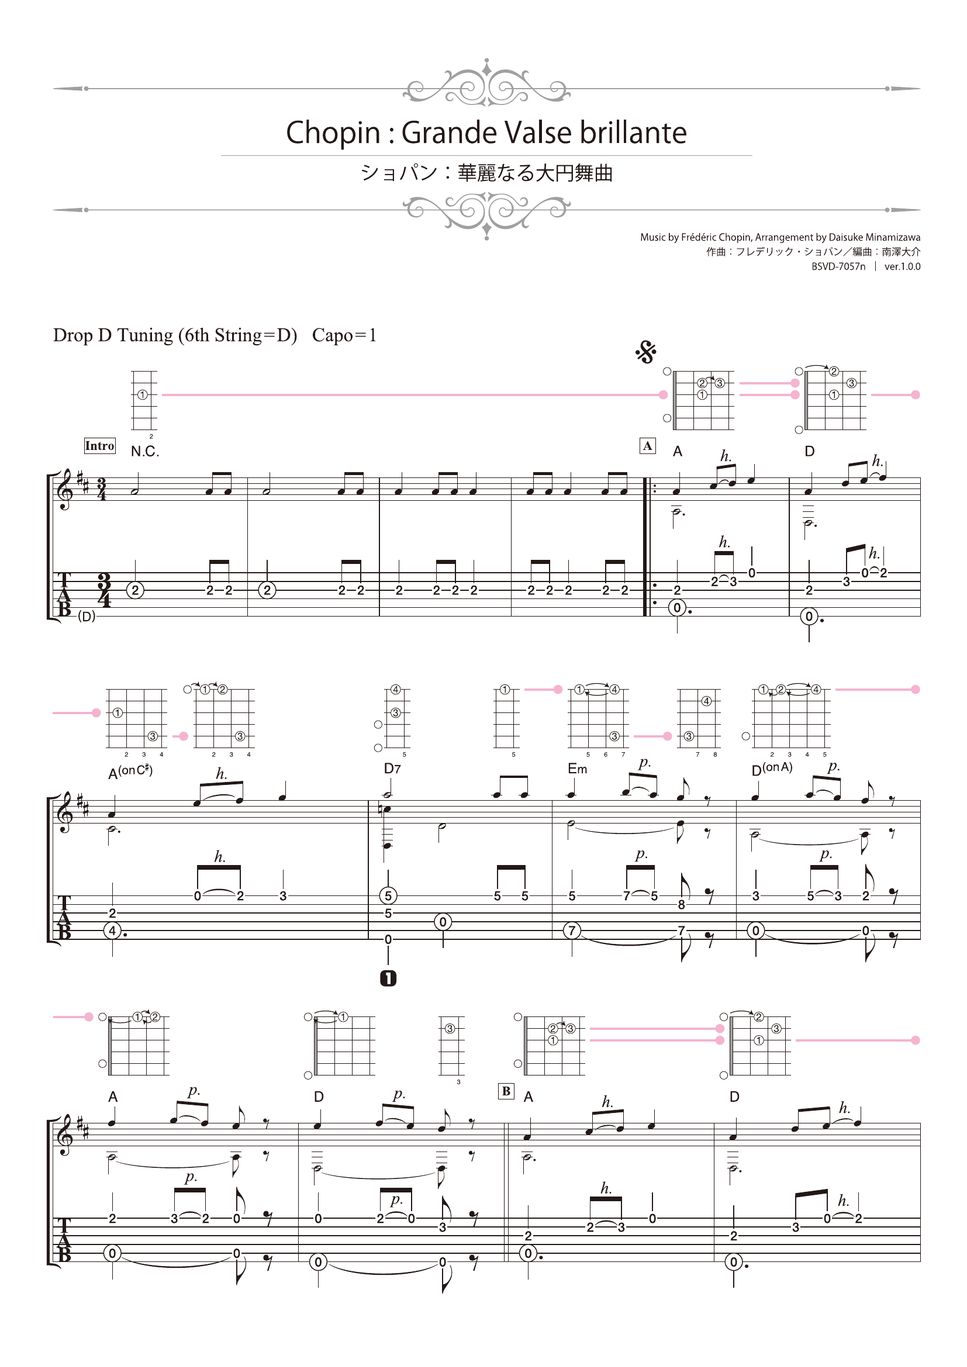 Chopin - Grande Valse brillante (Solo Guitar) by Daisuke Minamizawa